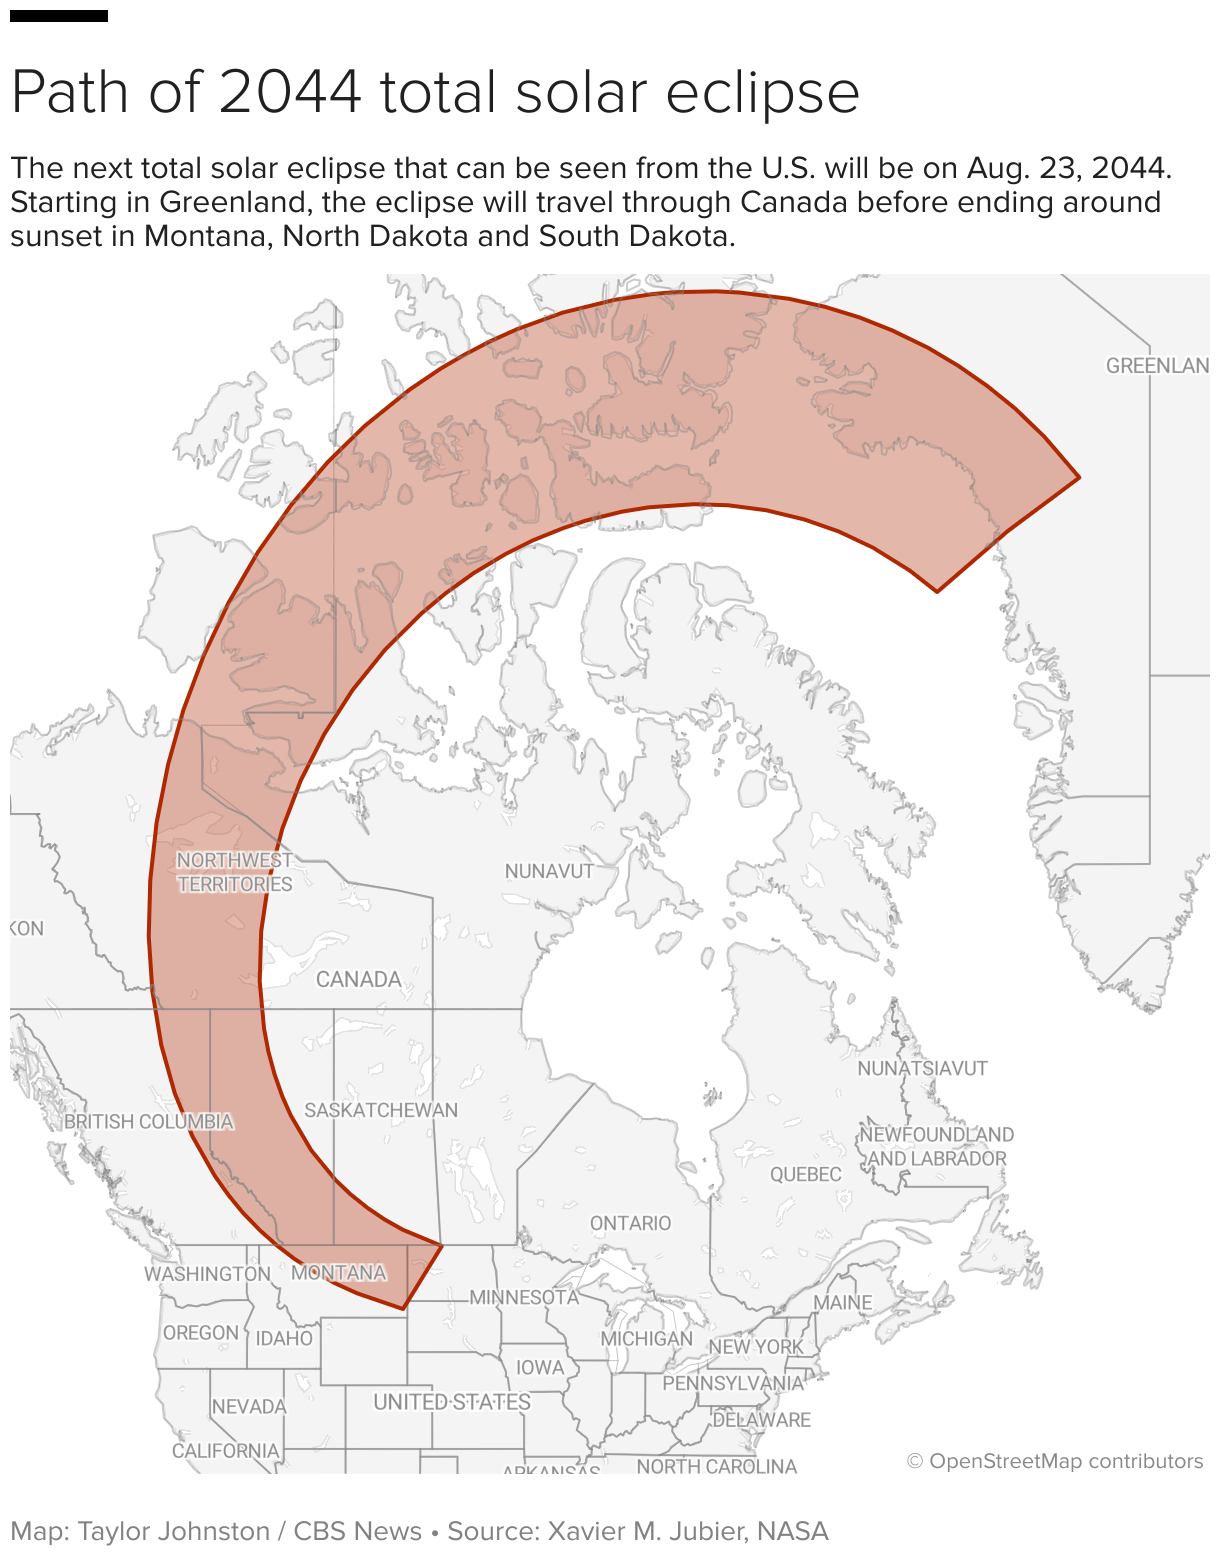 Karta koja prikazuje putanju potpune pomrčine Sunca 2044. od Grenlanda, Kanade i dijelova Sjedinjenih Država.